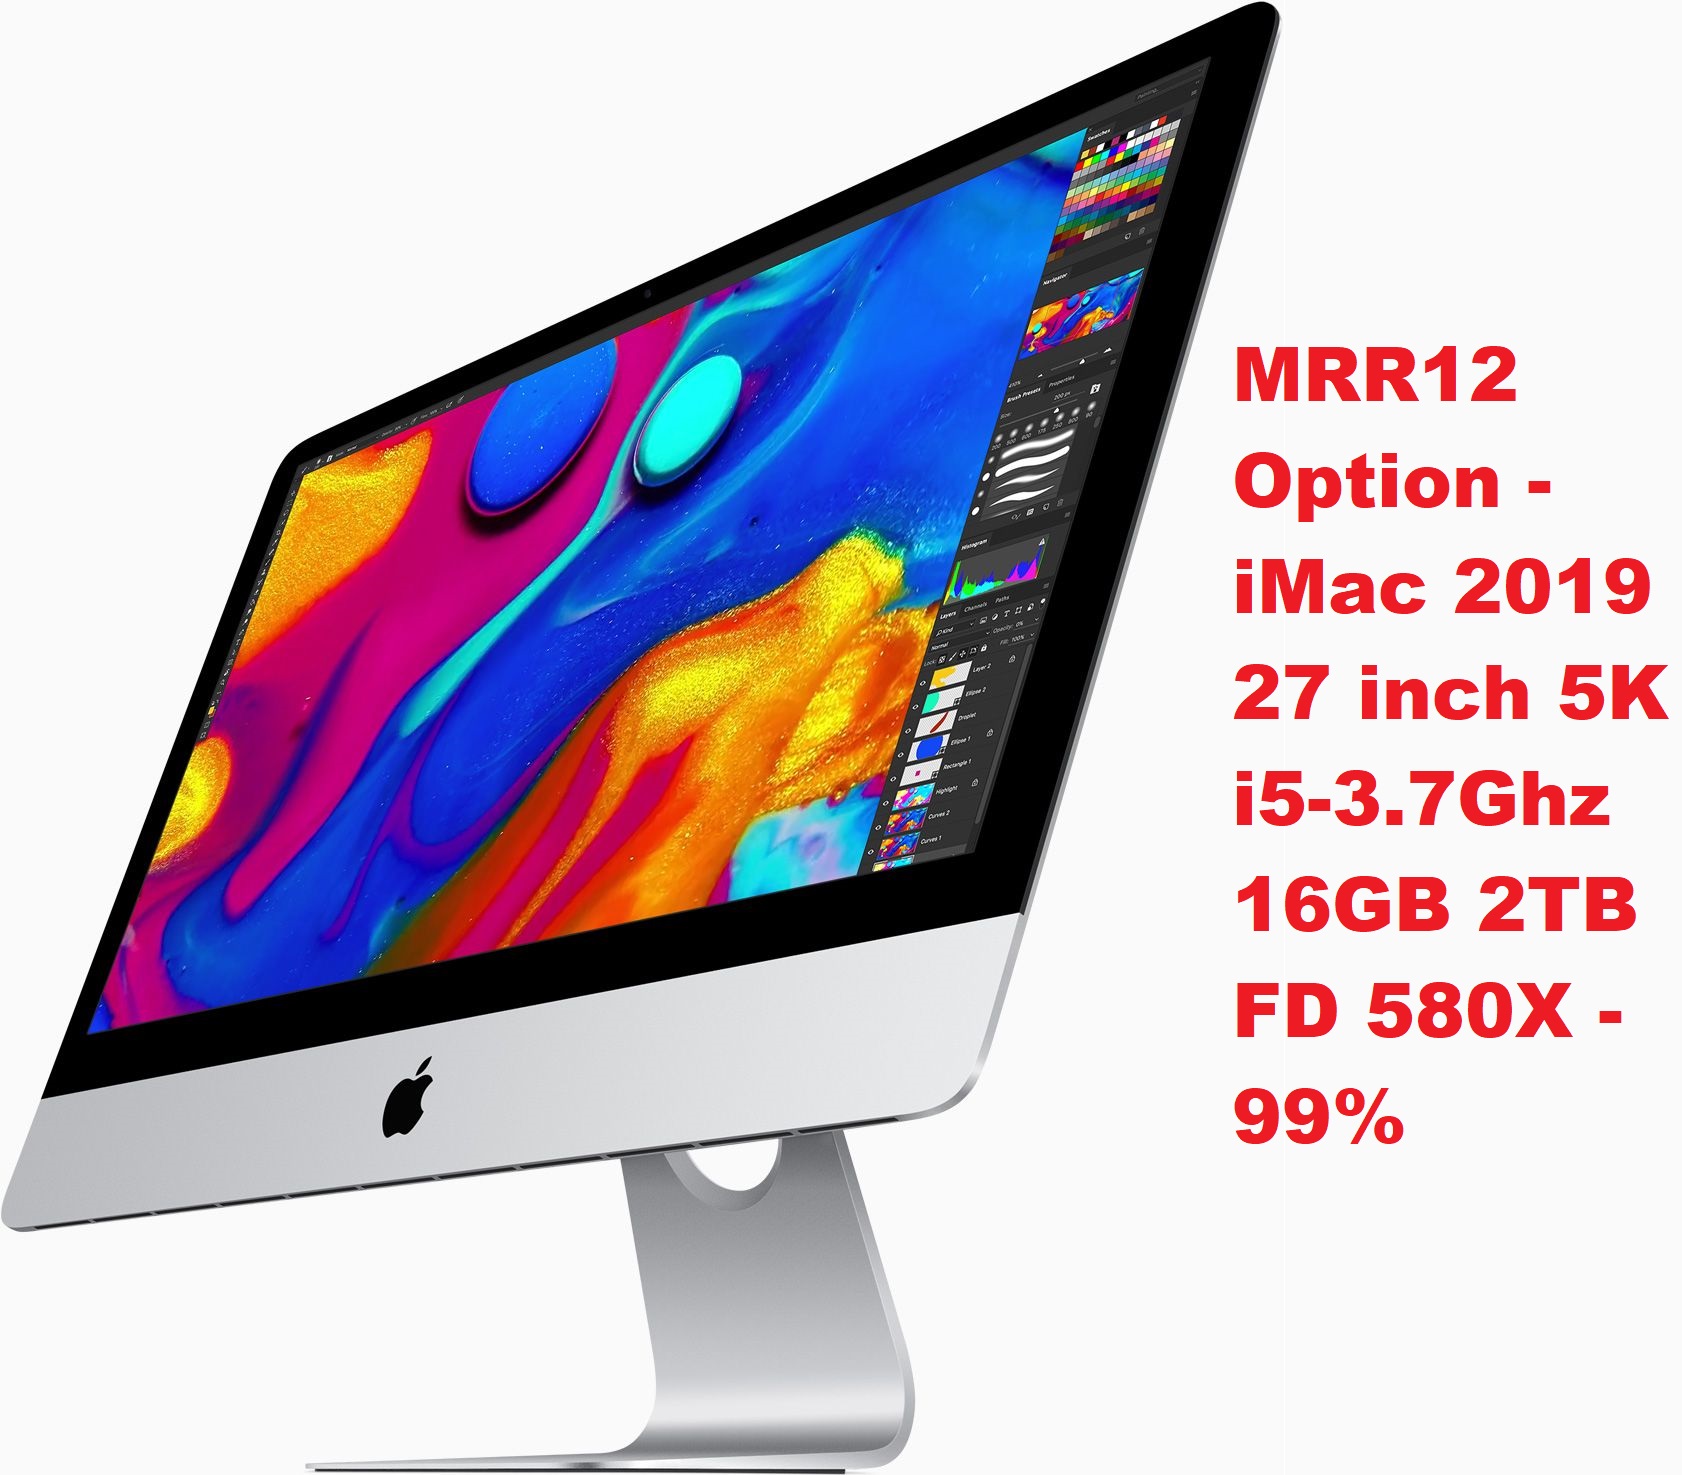 MRR12 Option - iMac 2019 27 inch 5K - i5-3.7Ghz 16GB 2TB FD 580X - 99%